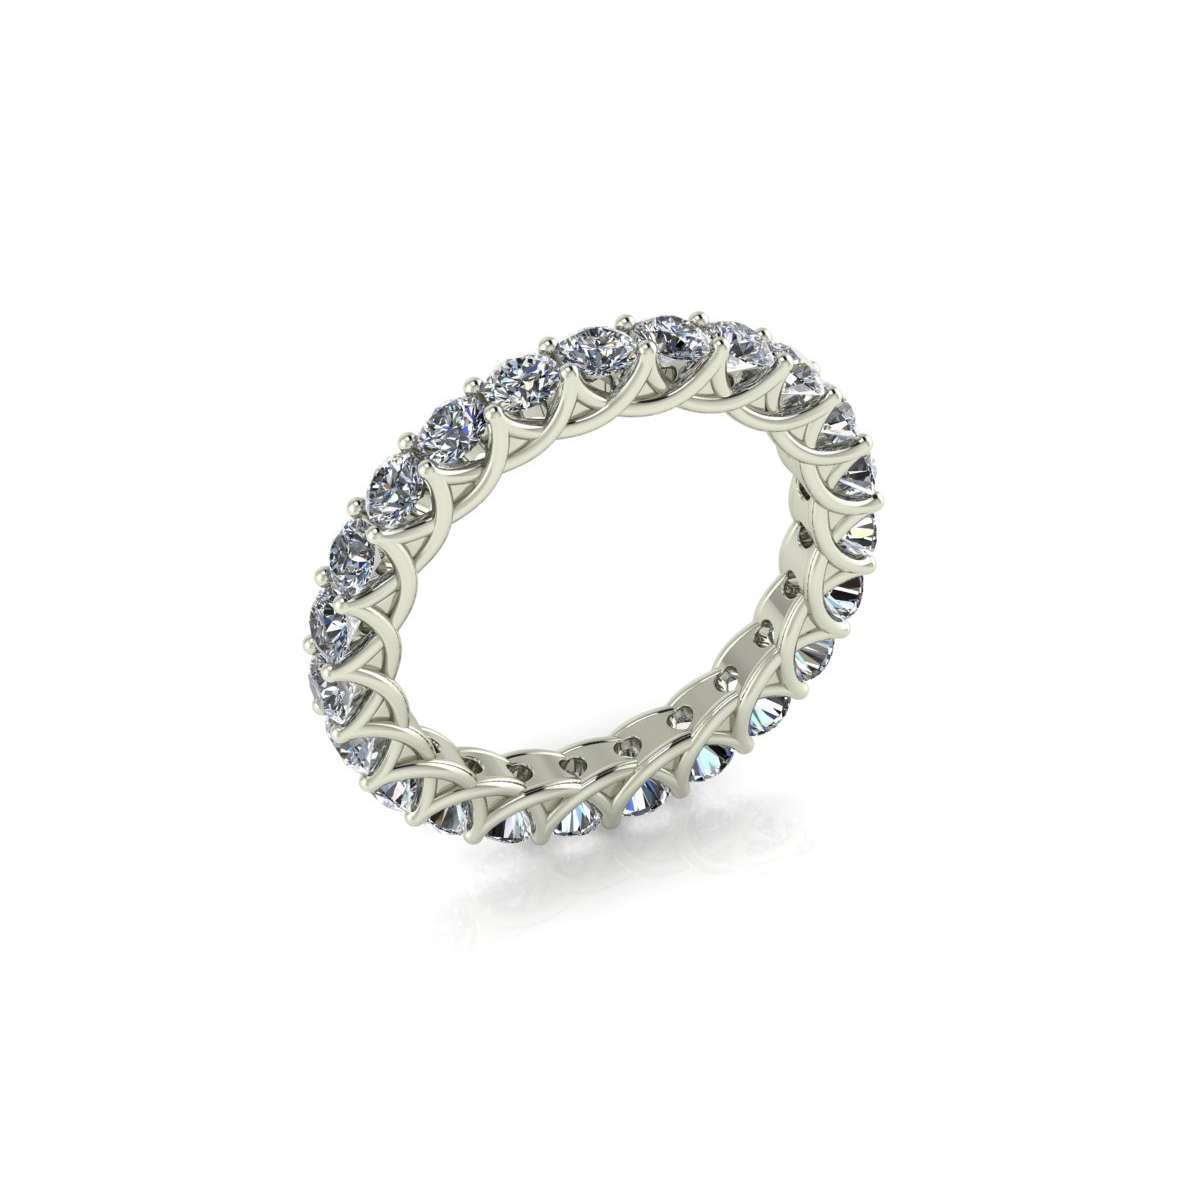 Eternity ring in white gold diamonds carat 2 g-vs1